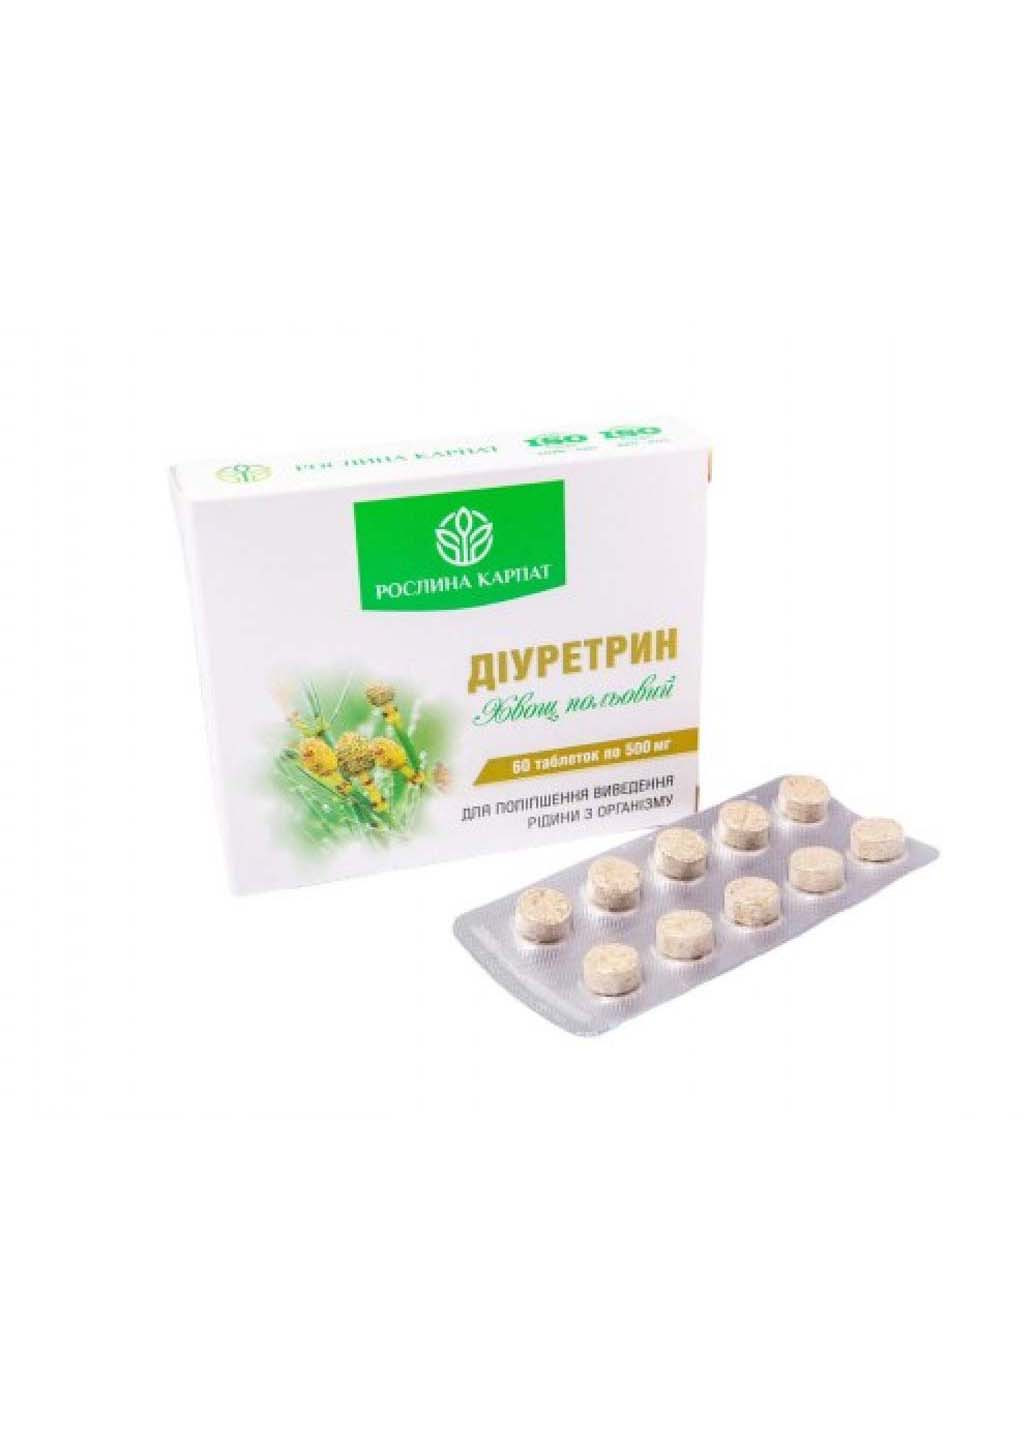 Діуретрин 60 таблеток по 500 мг Рослина Карпат (253845357)